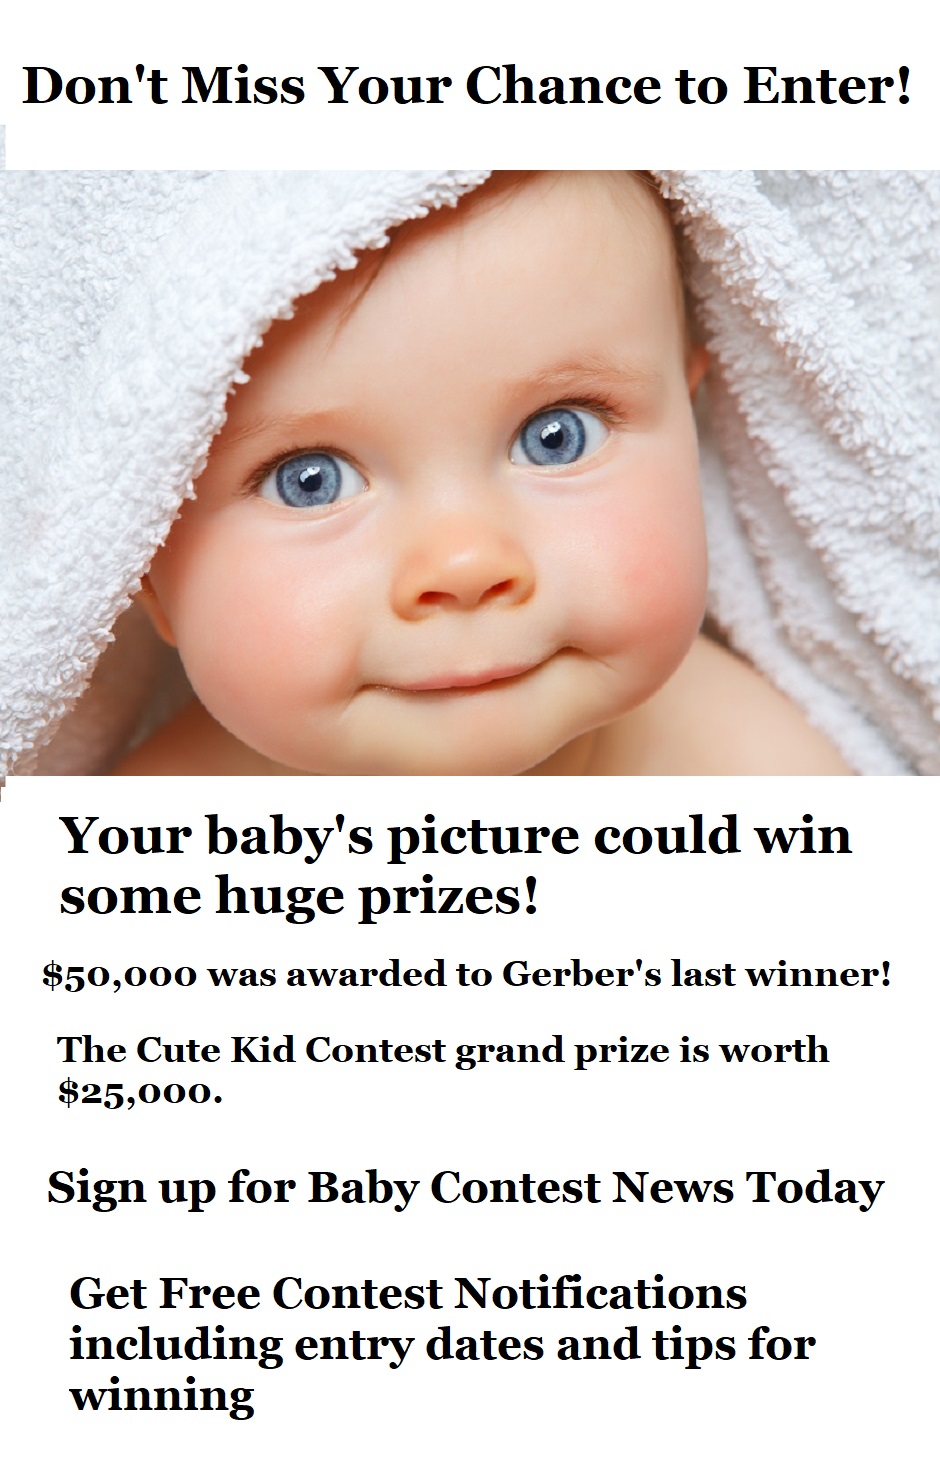 photo baby contest 2018